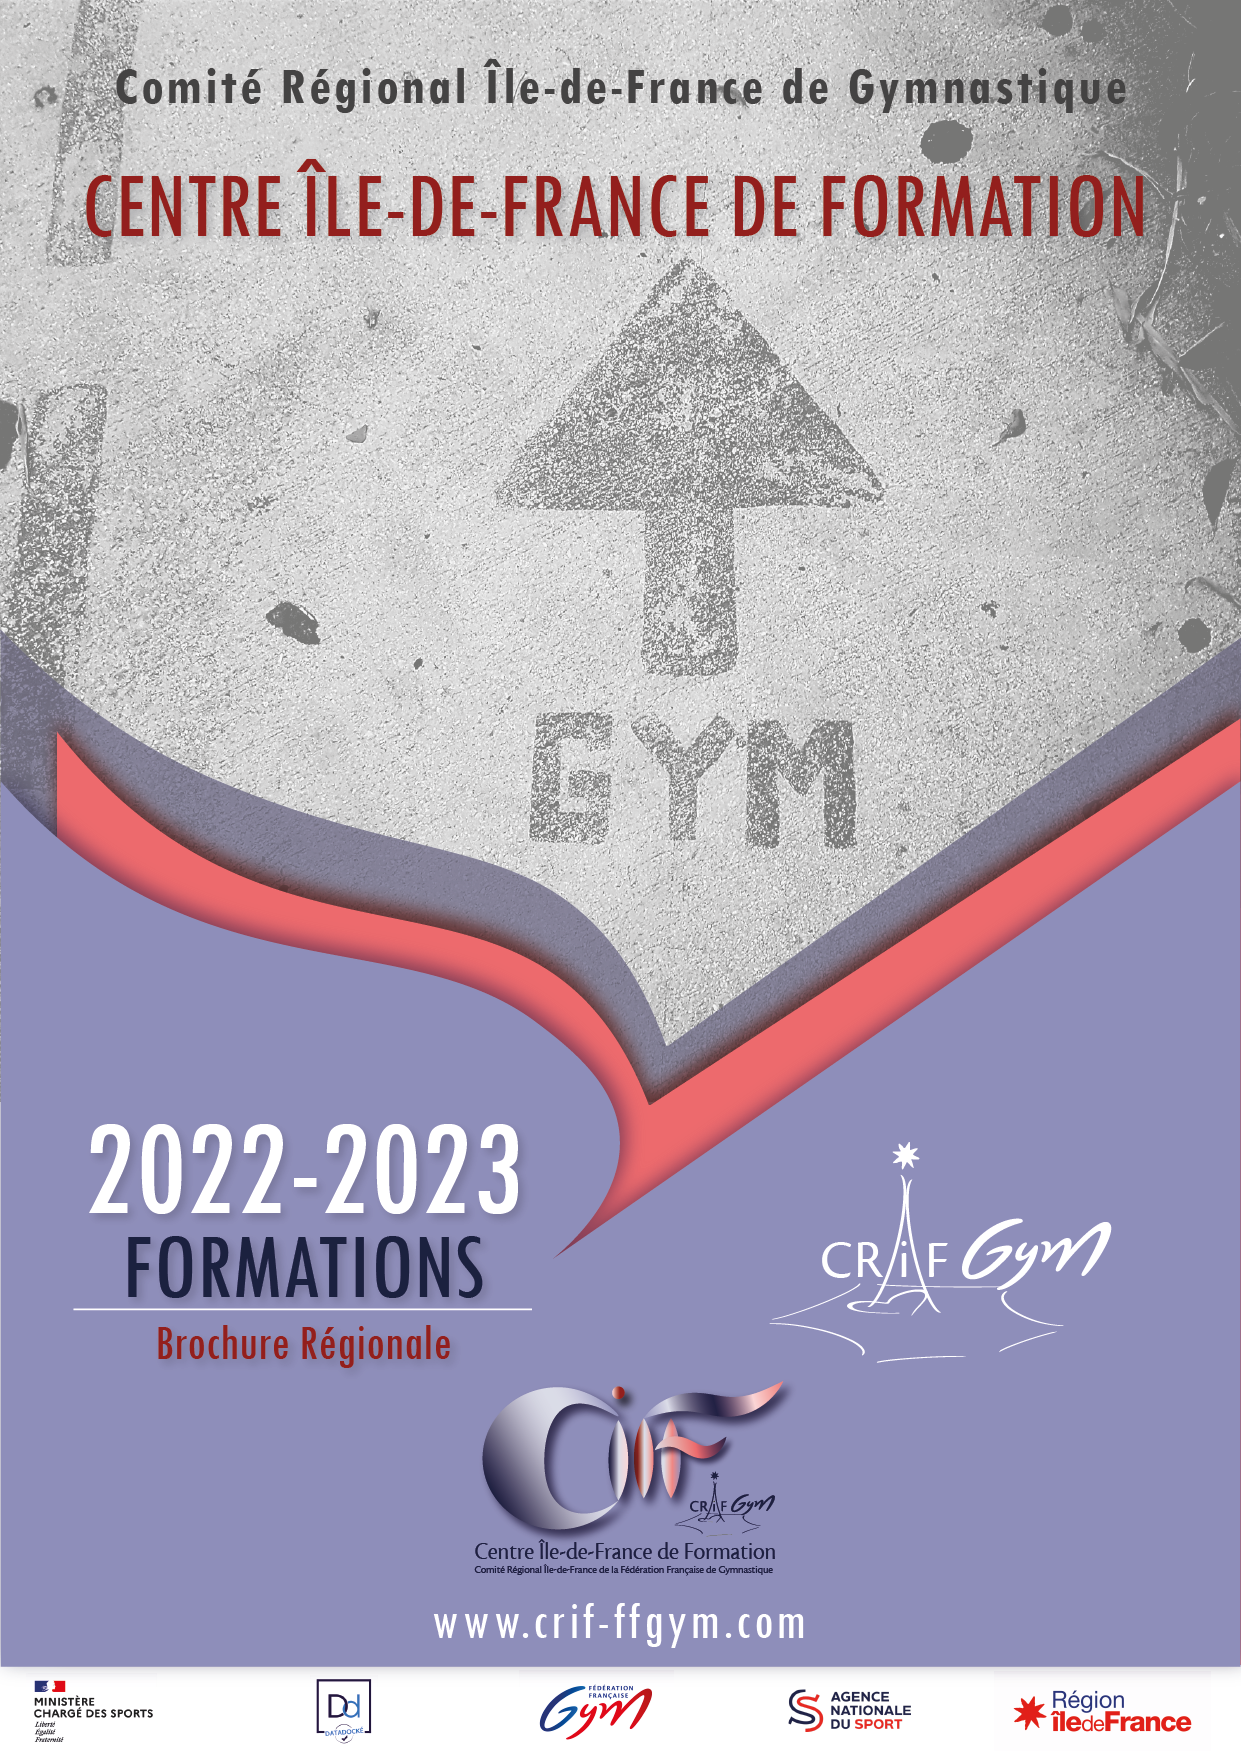 CIFF : SAISON 2021-2022